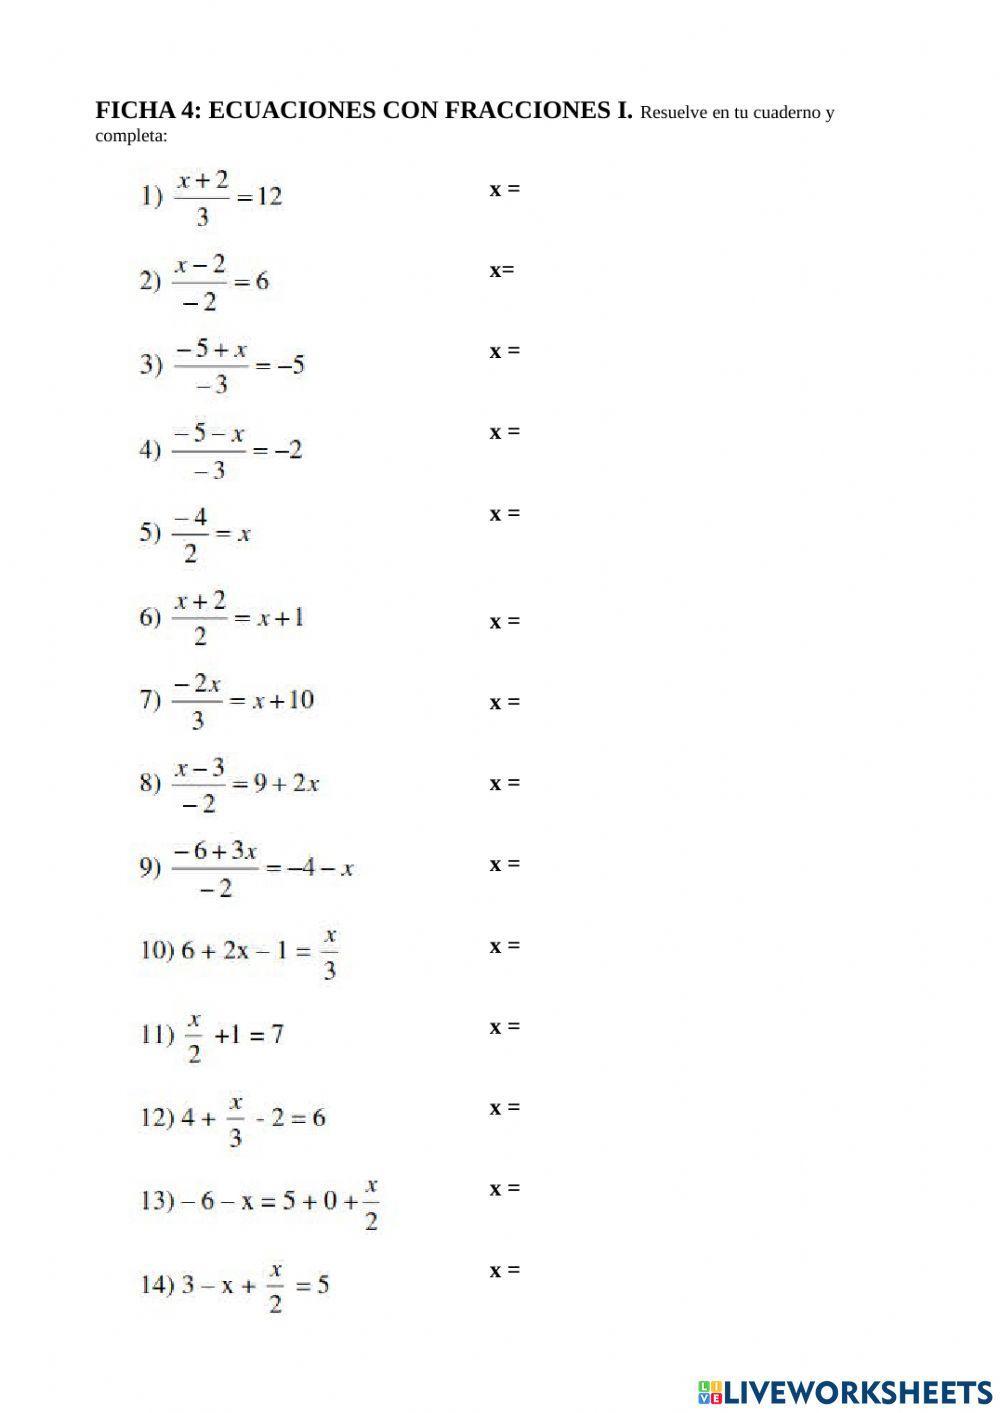 Ecuaciones con fracciones I